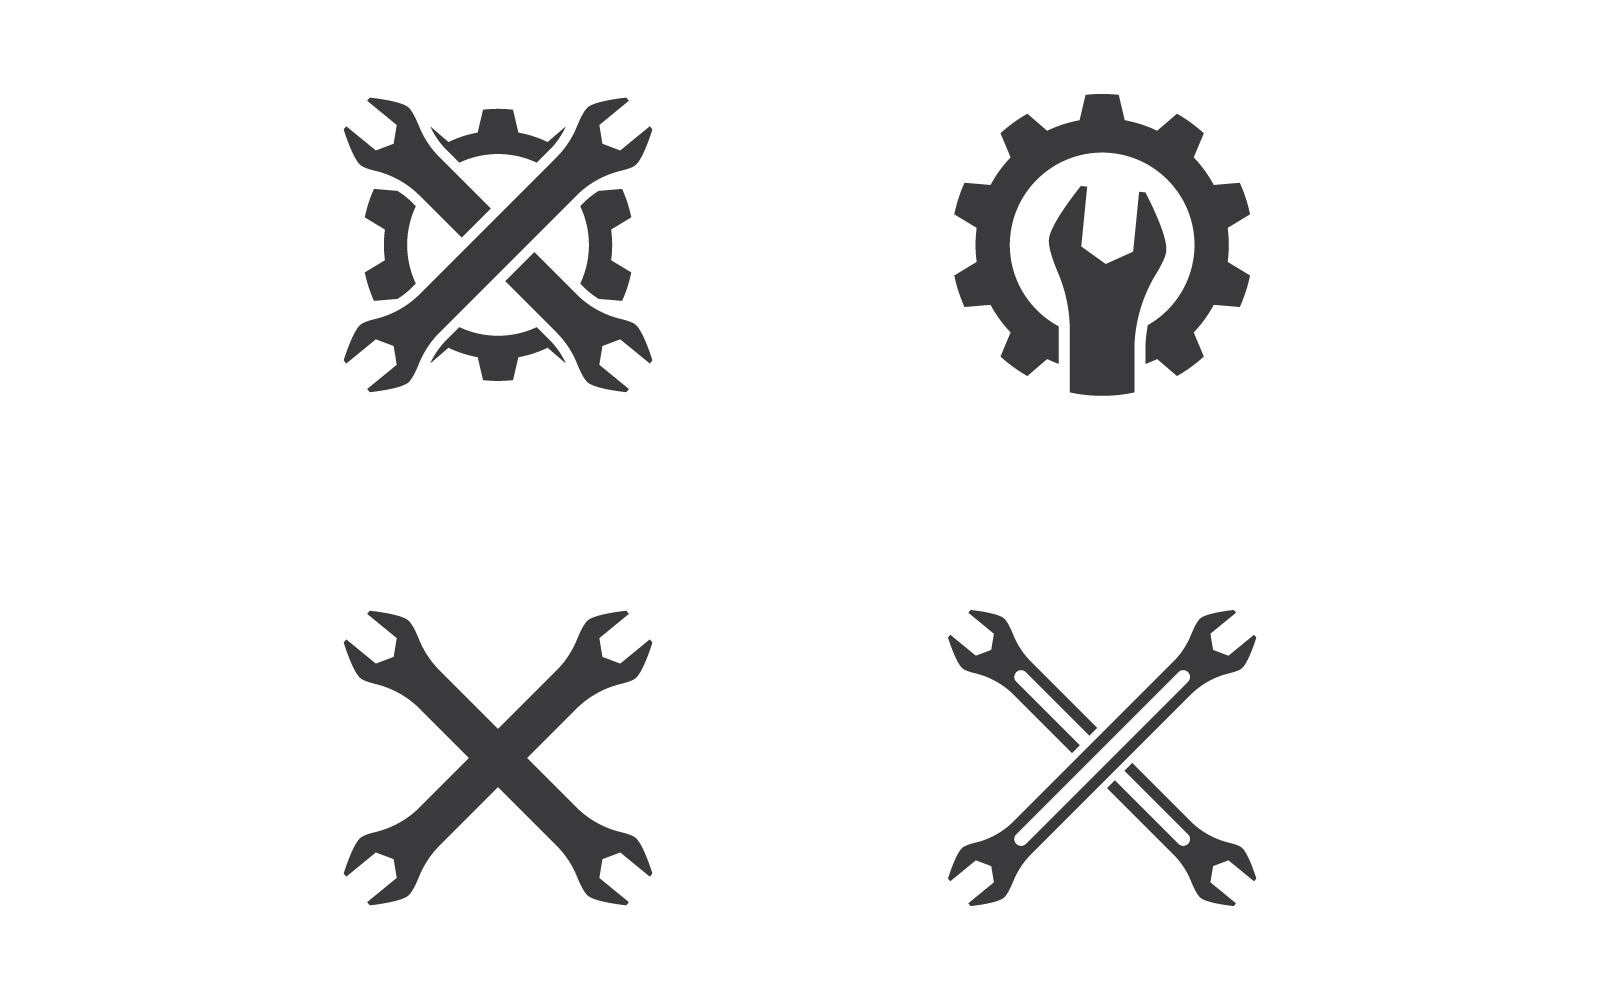 Wrench logo vector icon design